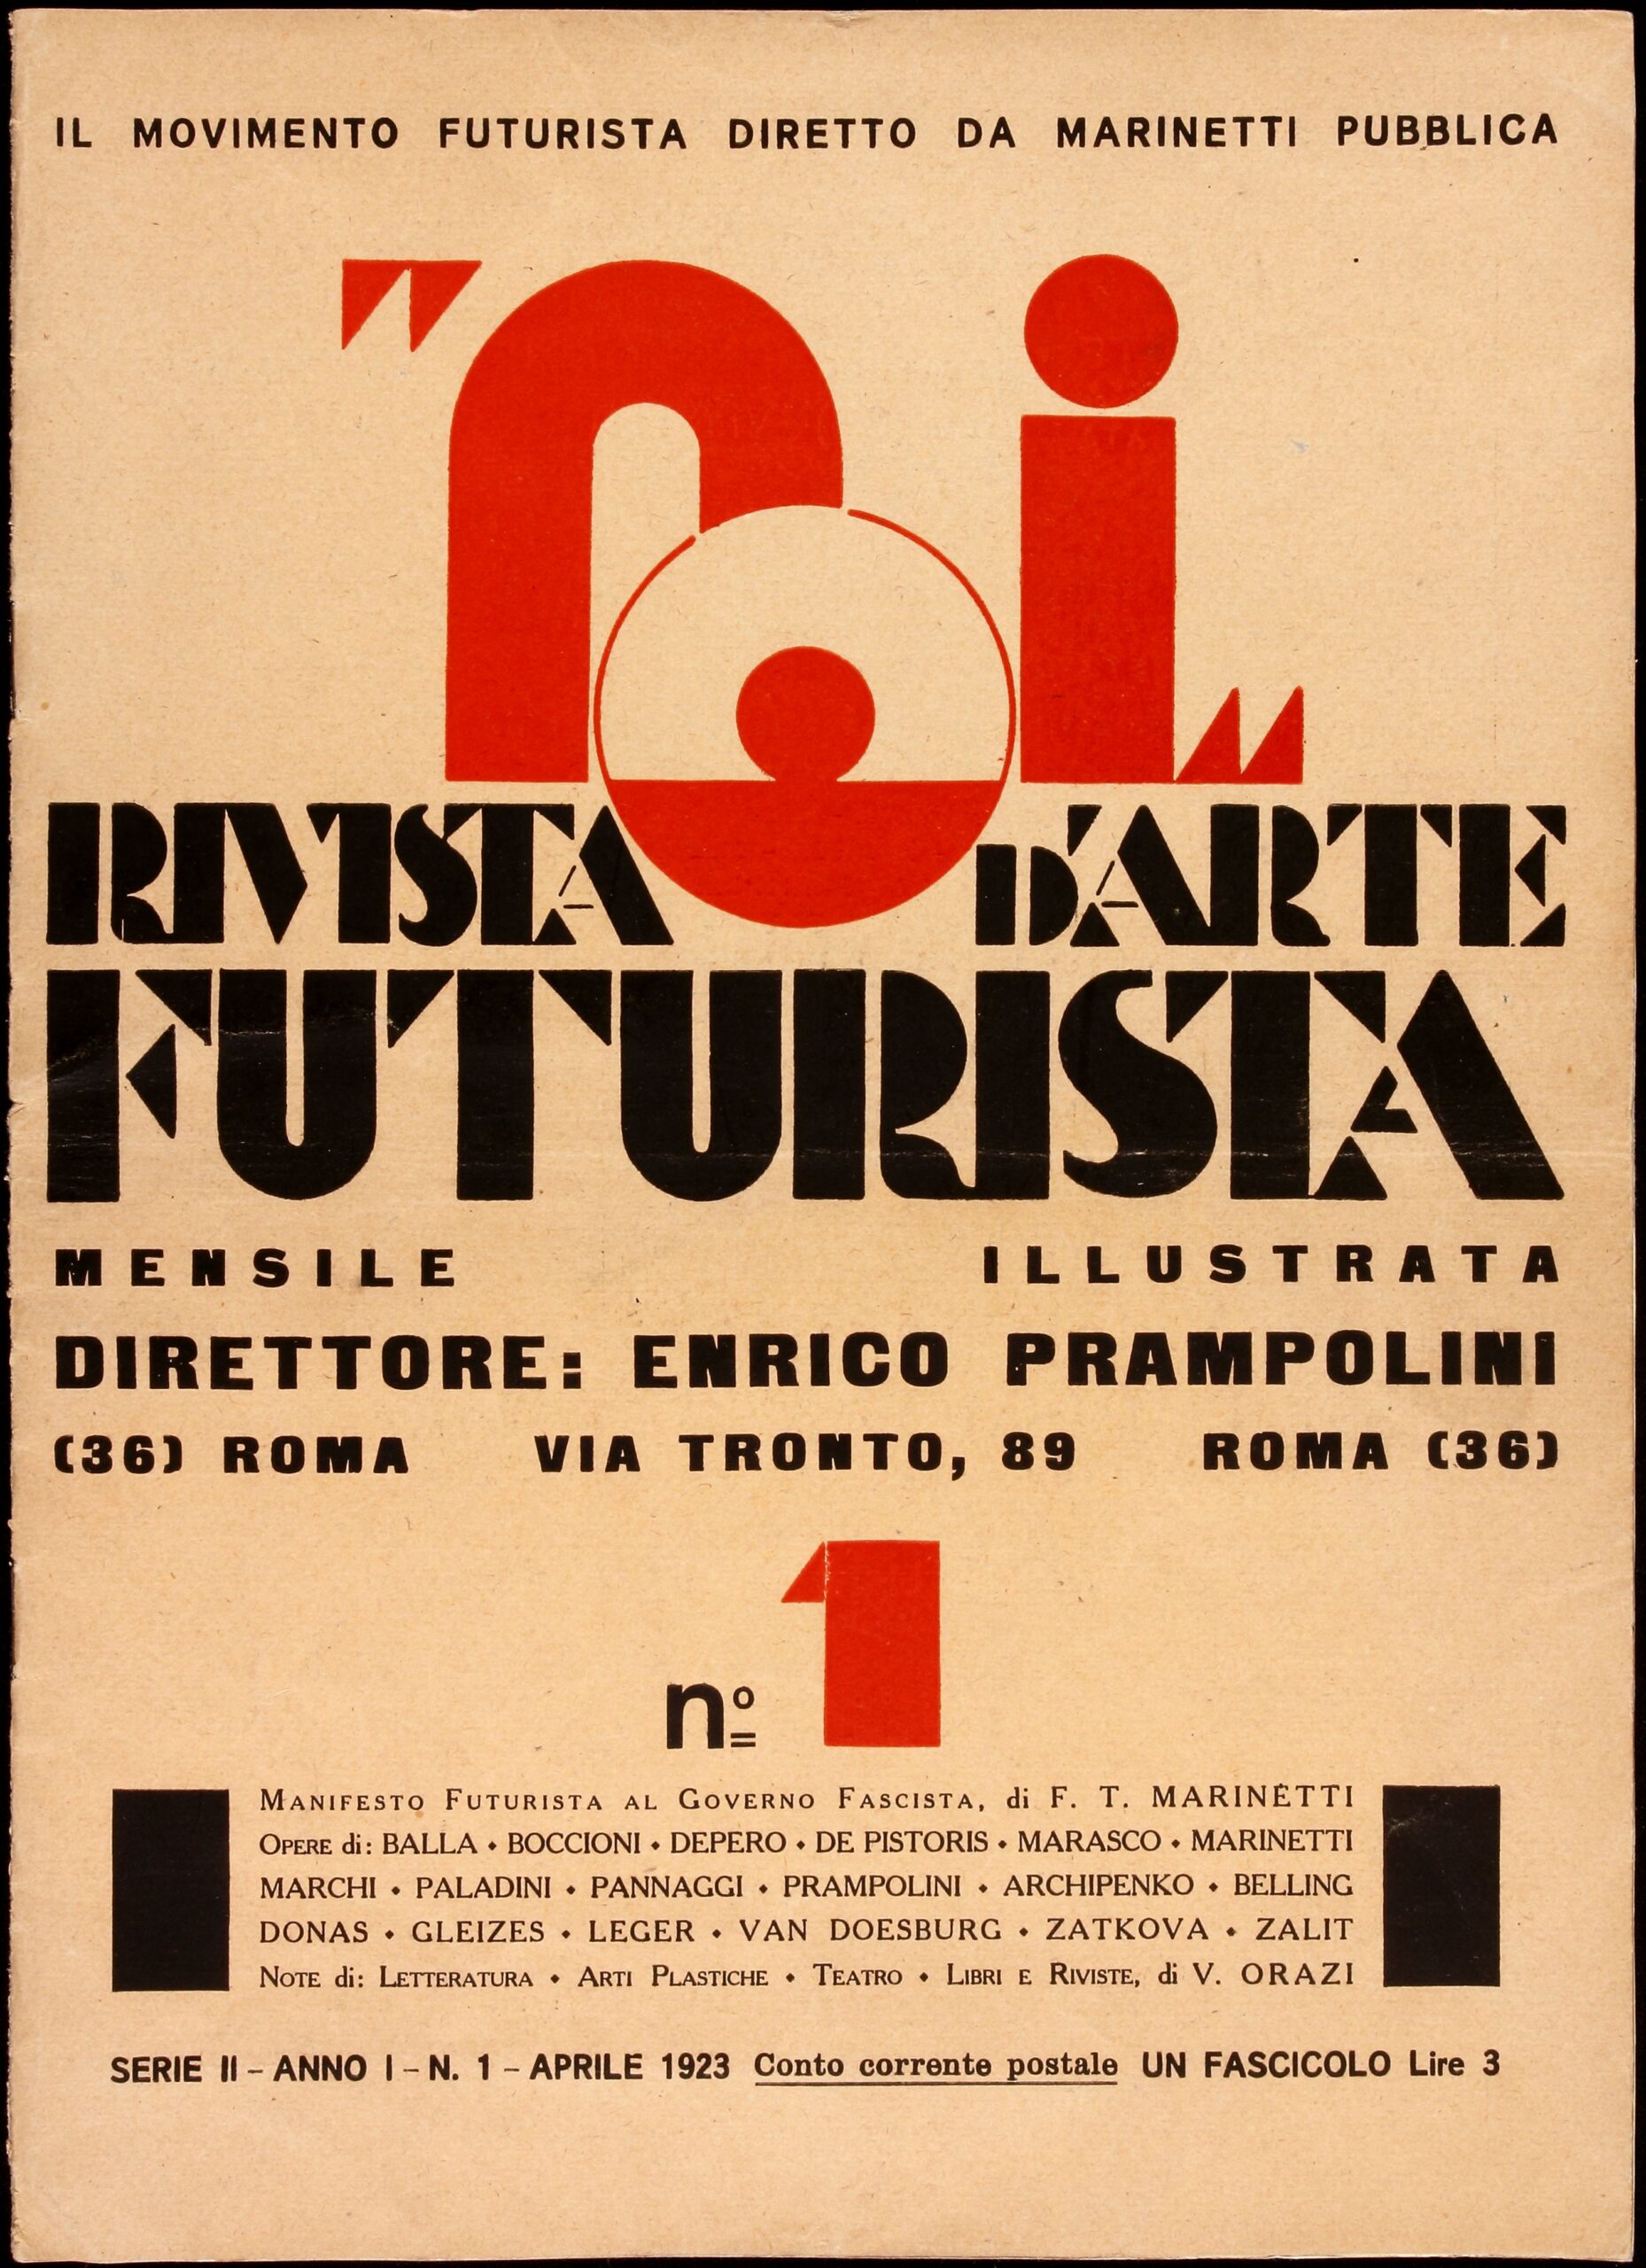 No.1 Rivista d’arte futurista – FUTURISMO!